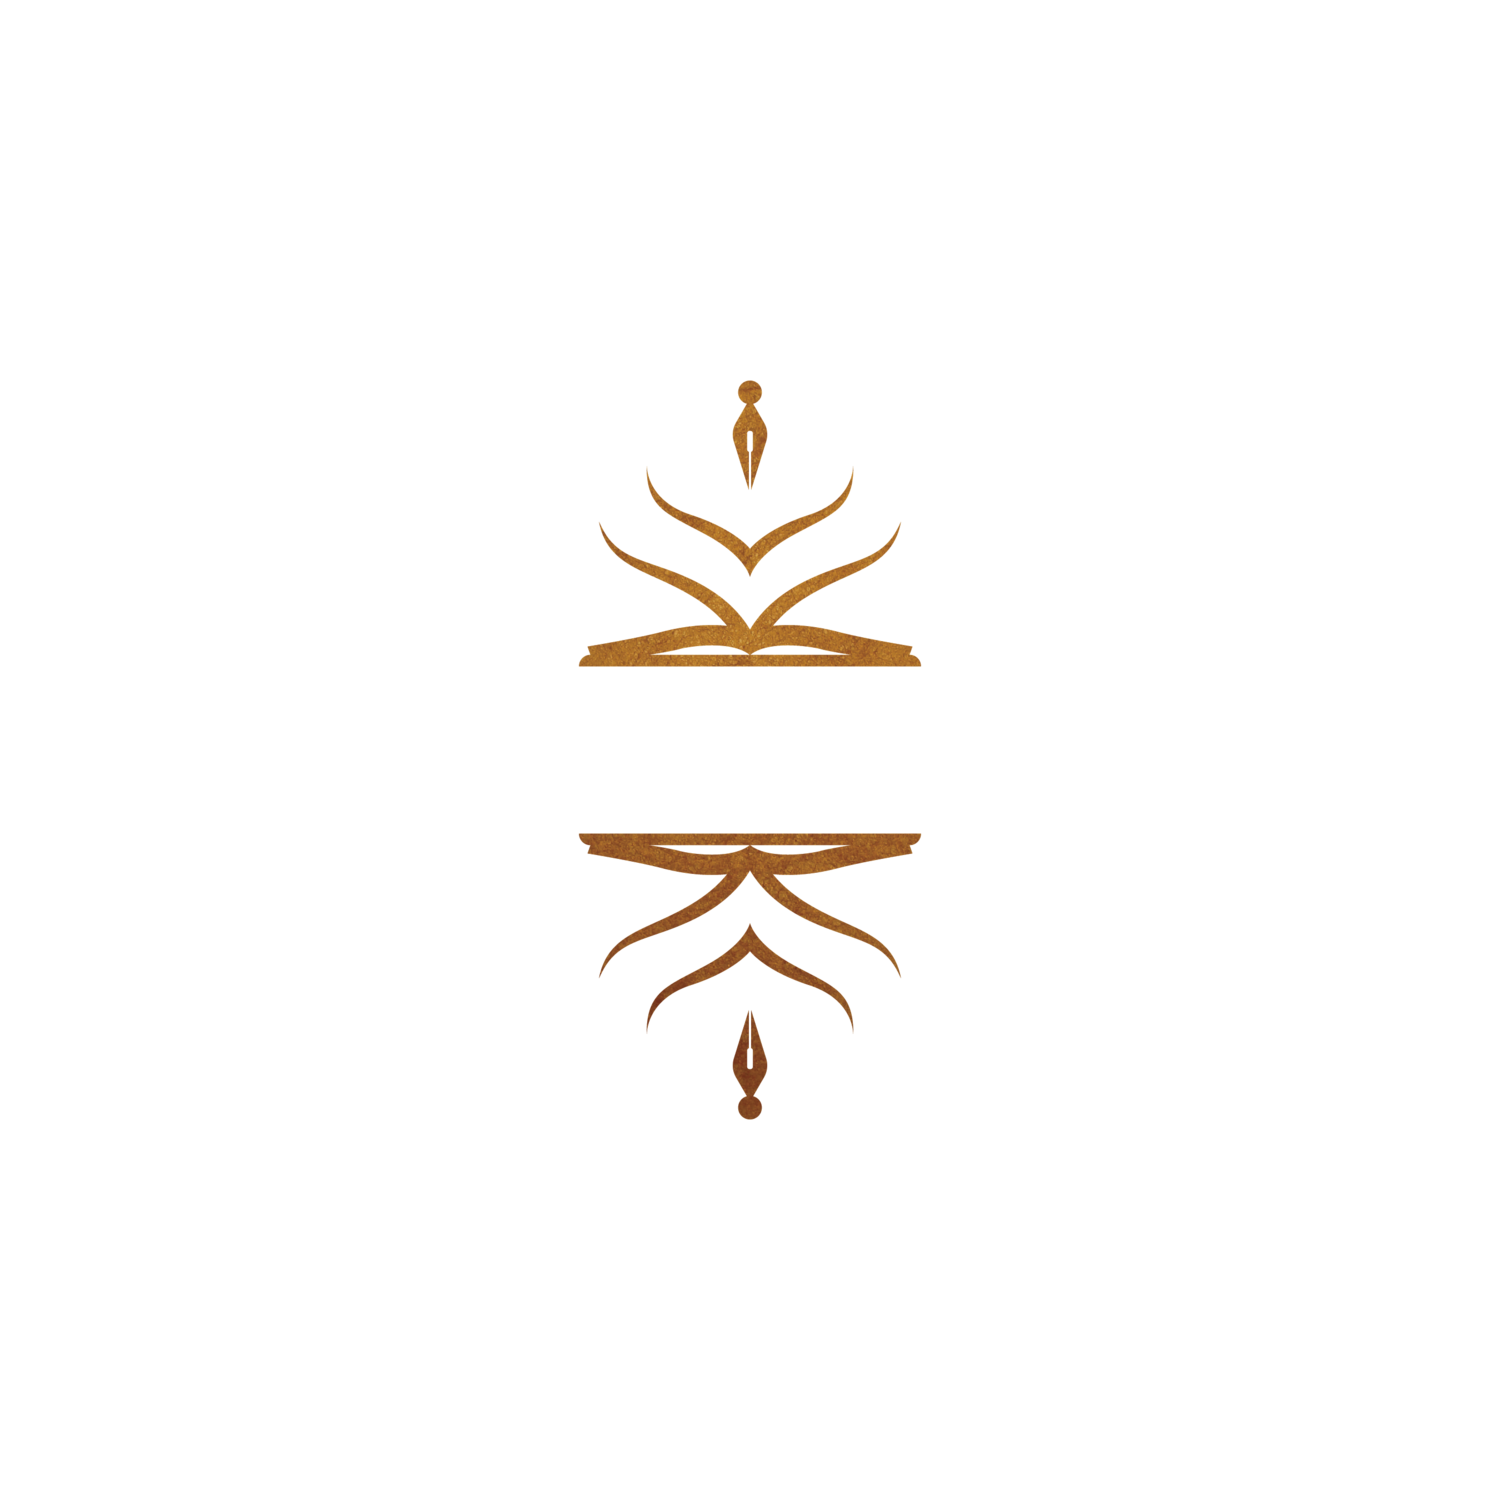 Kristina Lao